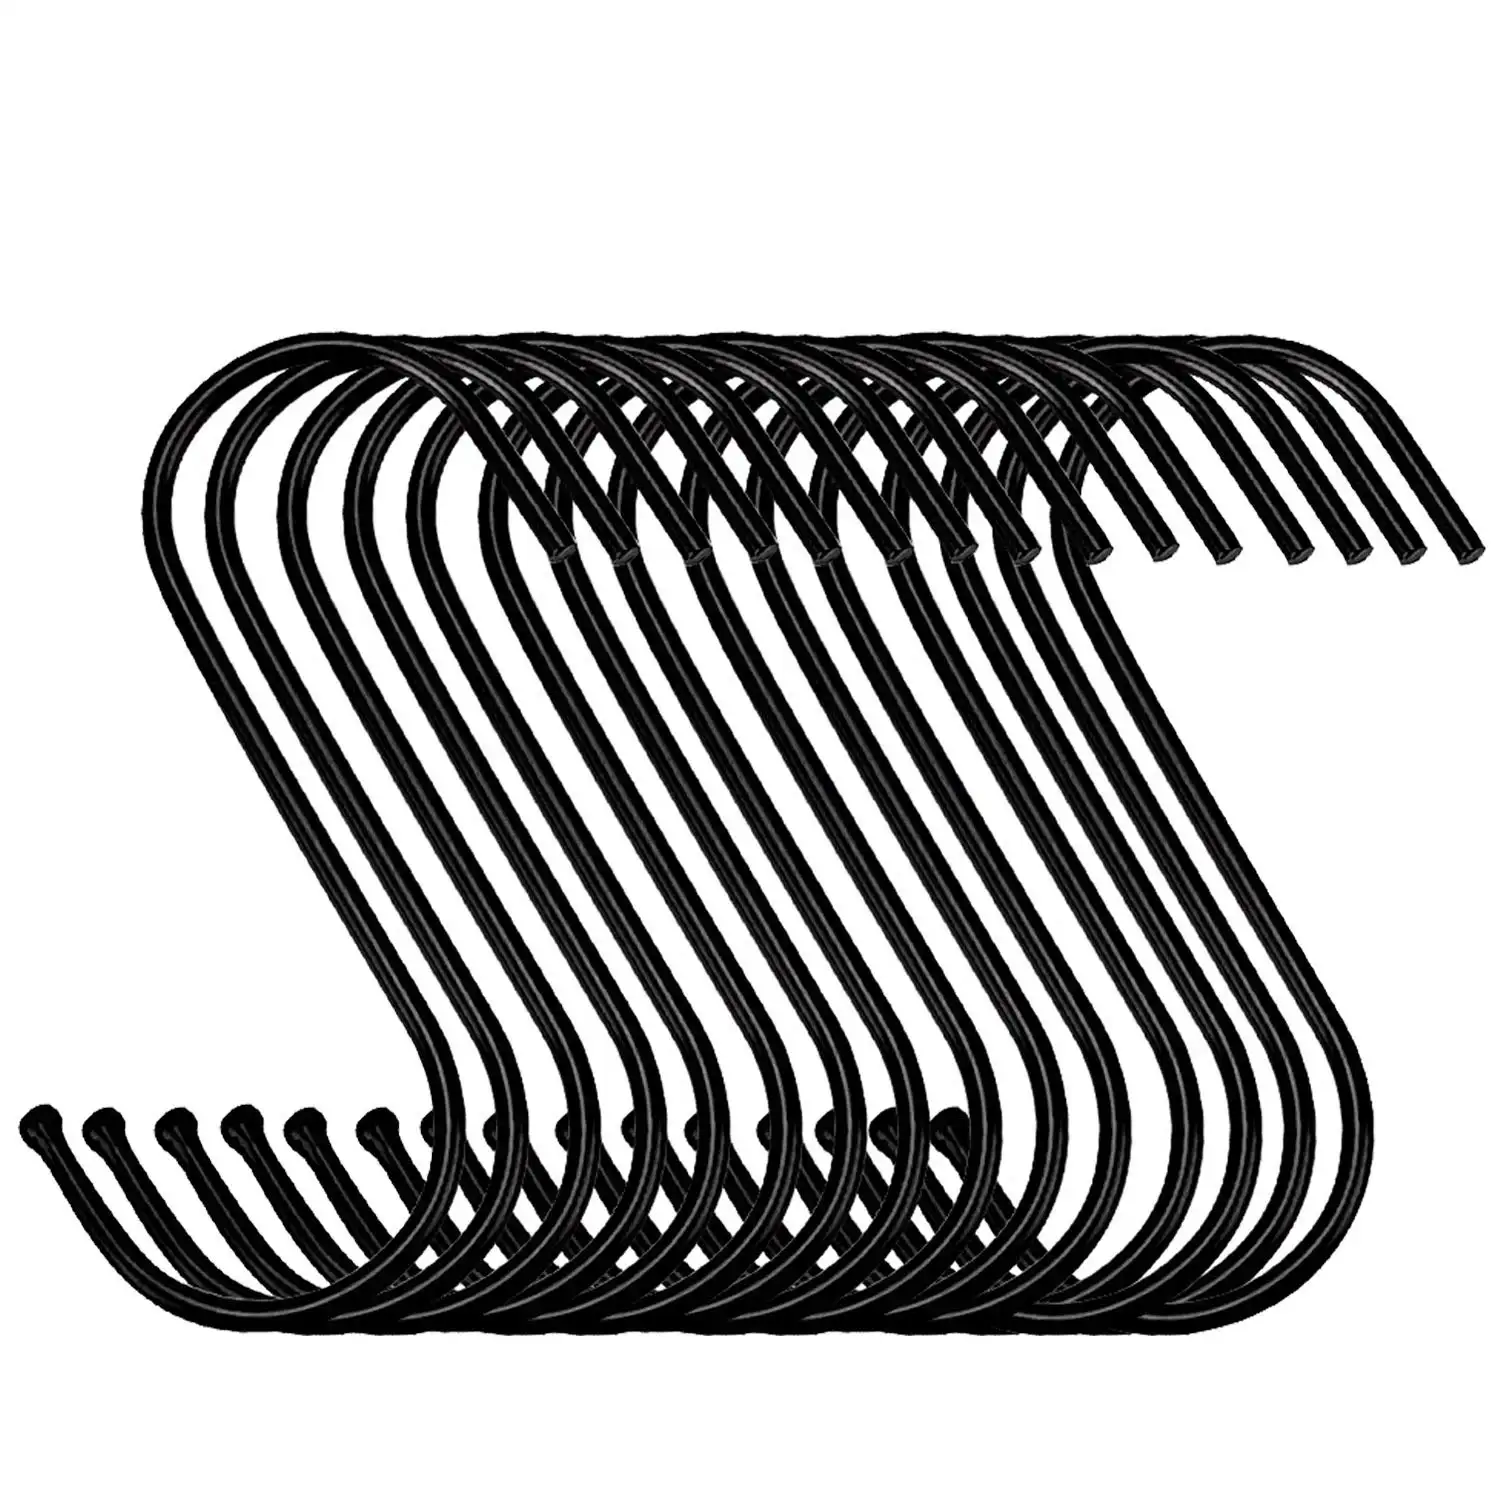 S-Form Eisen Stahl Kleiderbügel Hänge haken für Mantel Hut über der Tür Haken zum Aufhängen Mäntel Haken für Kleidung